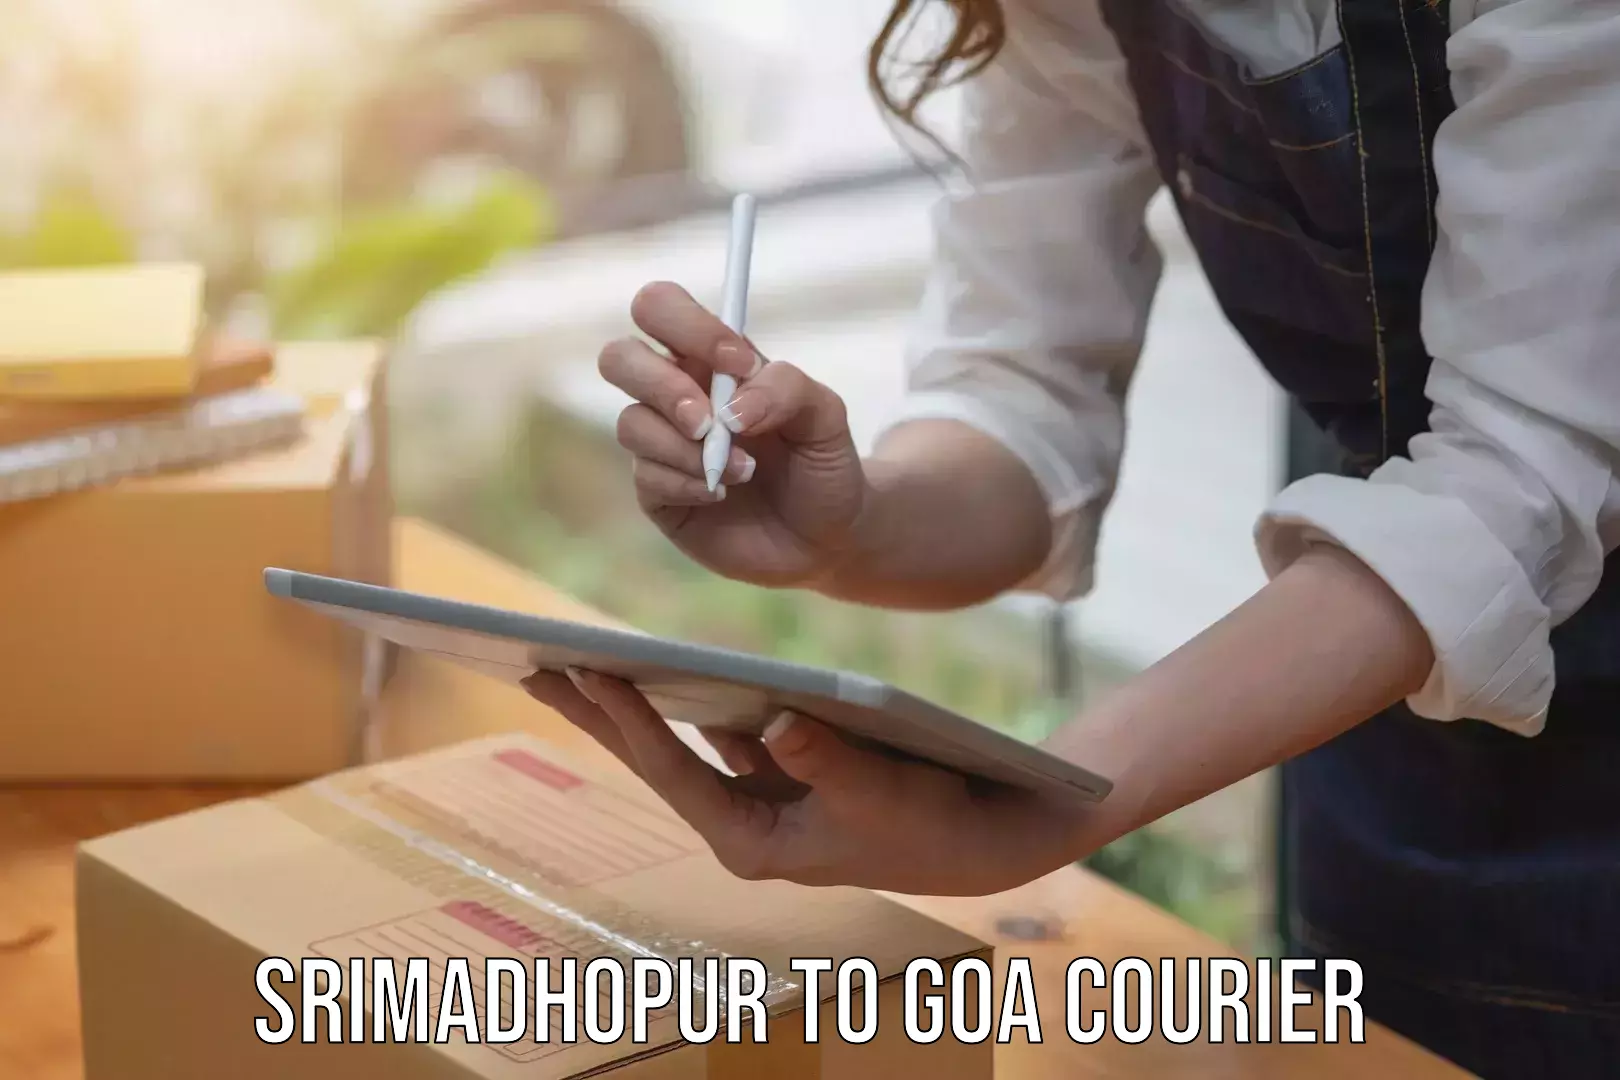 Special handling courier Srimadhopur to Vasco da Gama